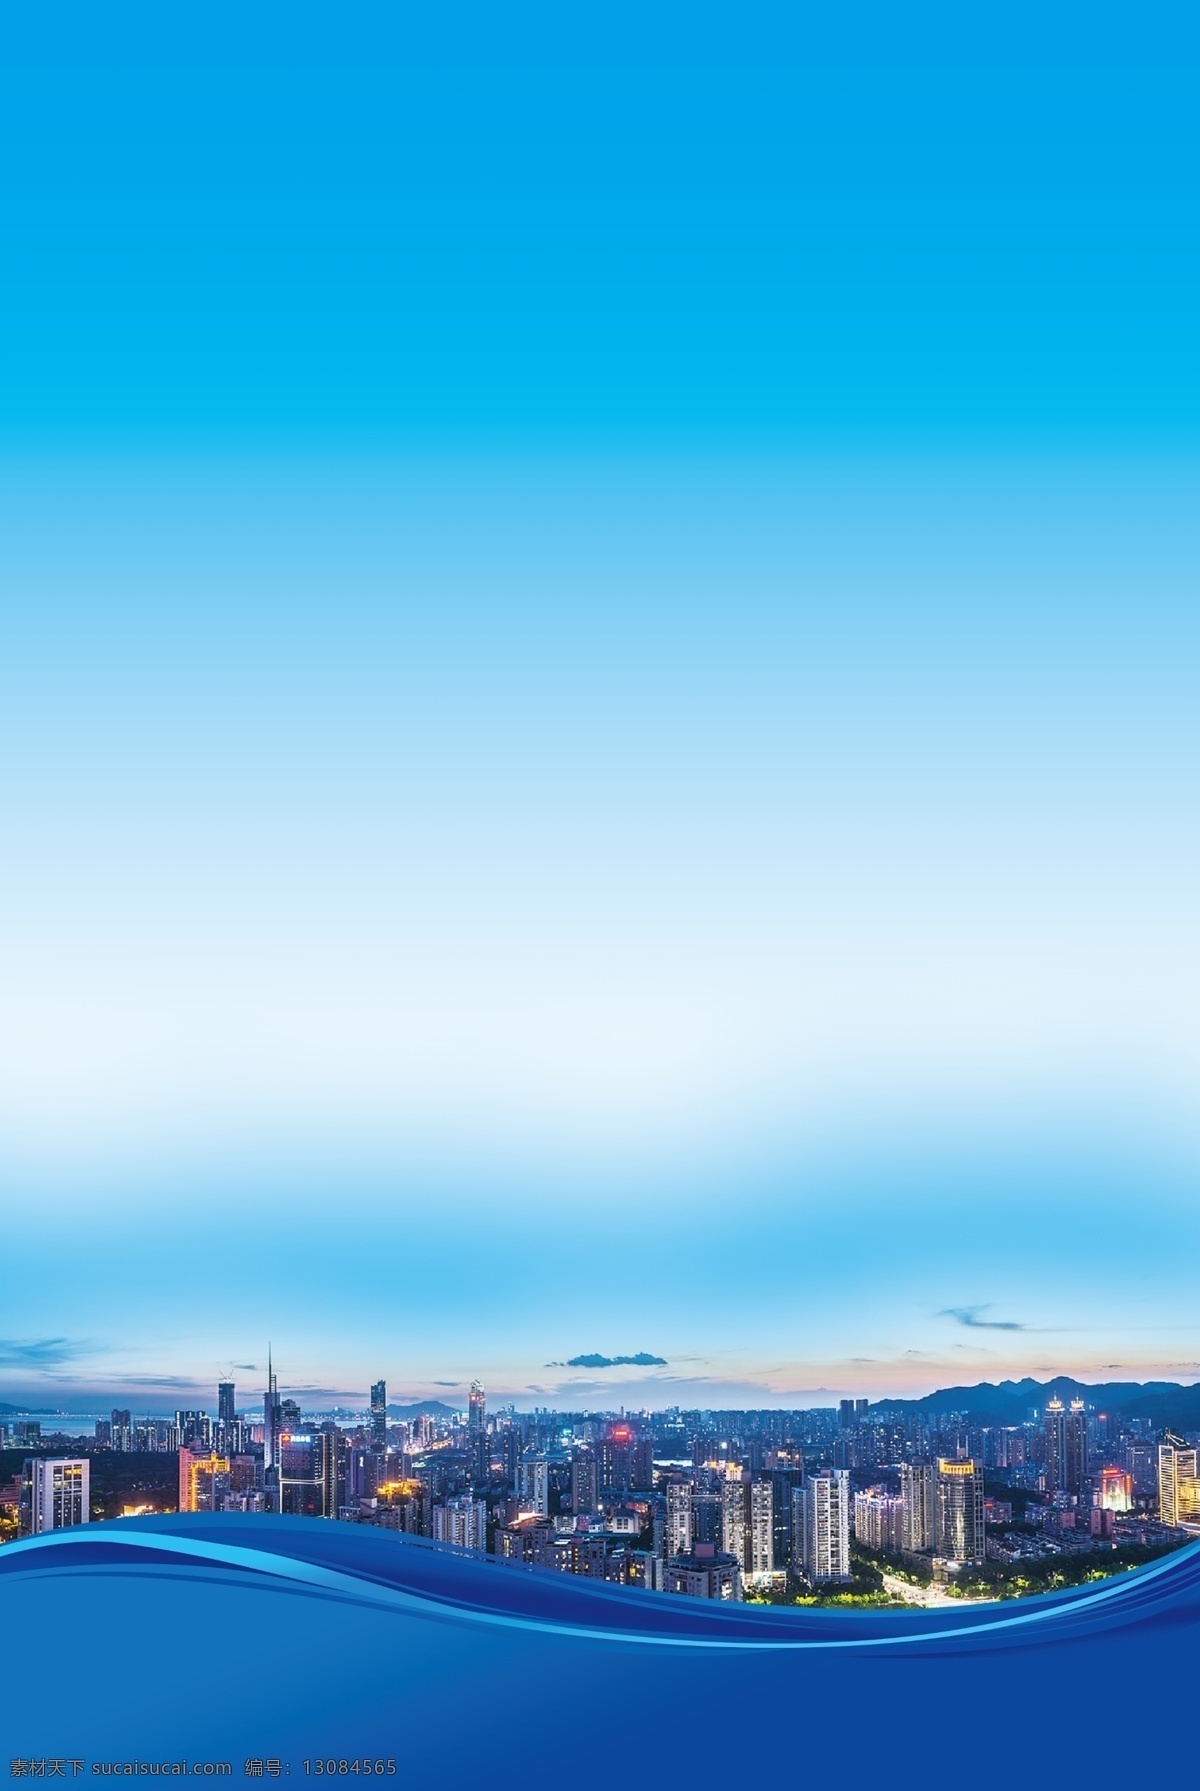 制度背景图片 制度 背景 蓝色 城市 夕阳 蓝 分层